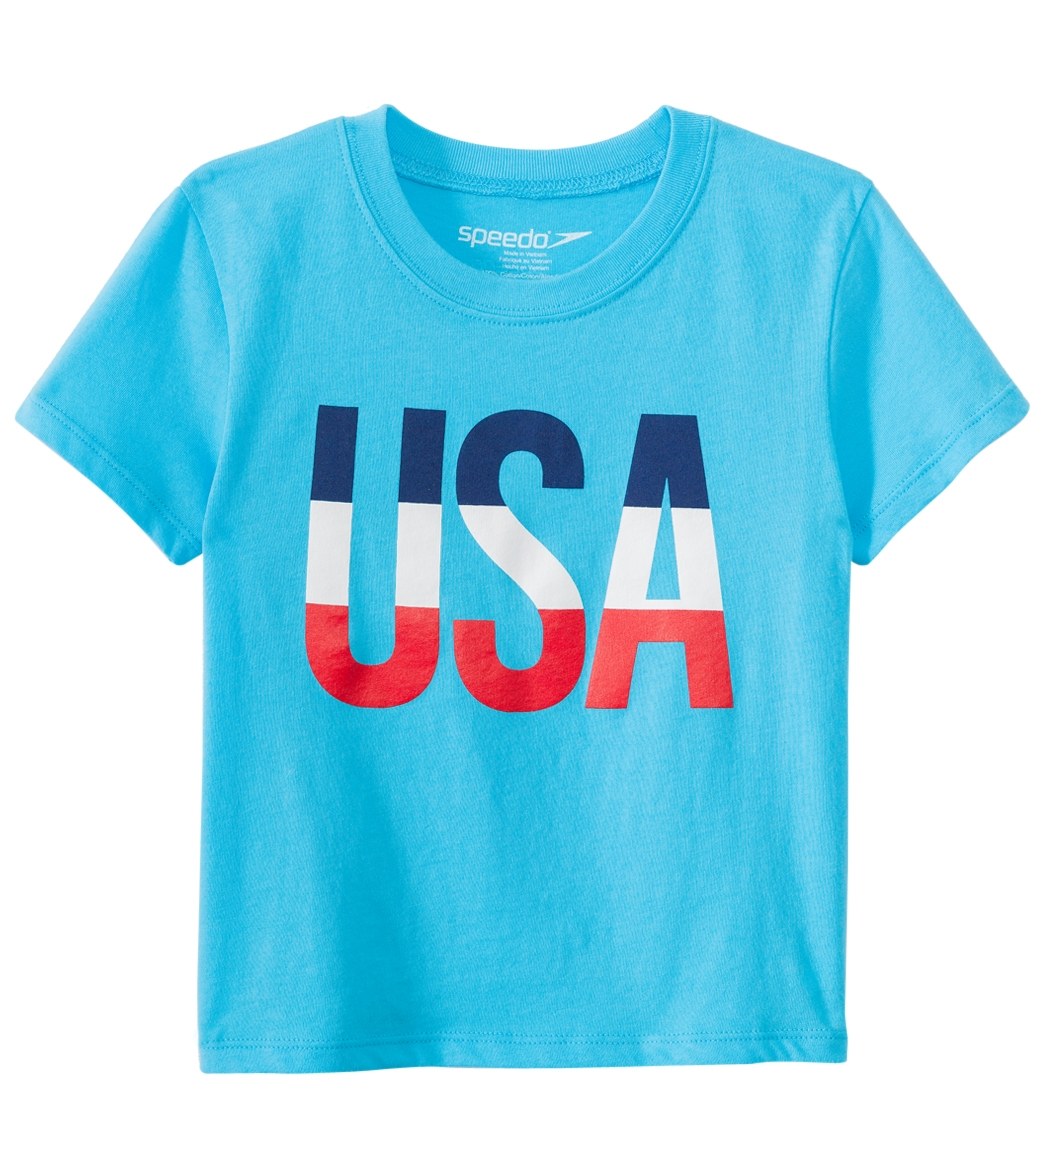 Speedo Men's Toddler Usa Tee Shirt - Light Blue 4T Cotton - Swimoutlet.com